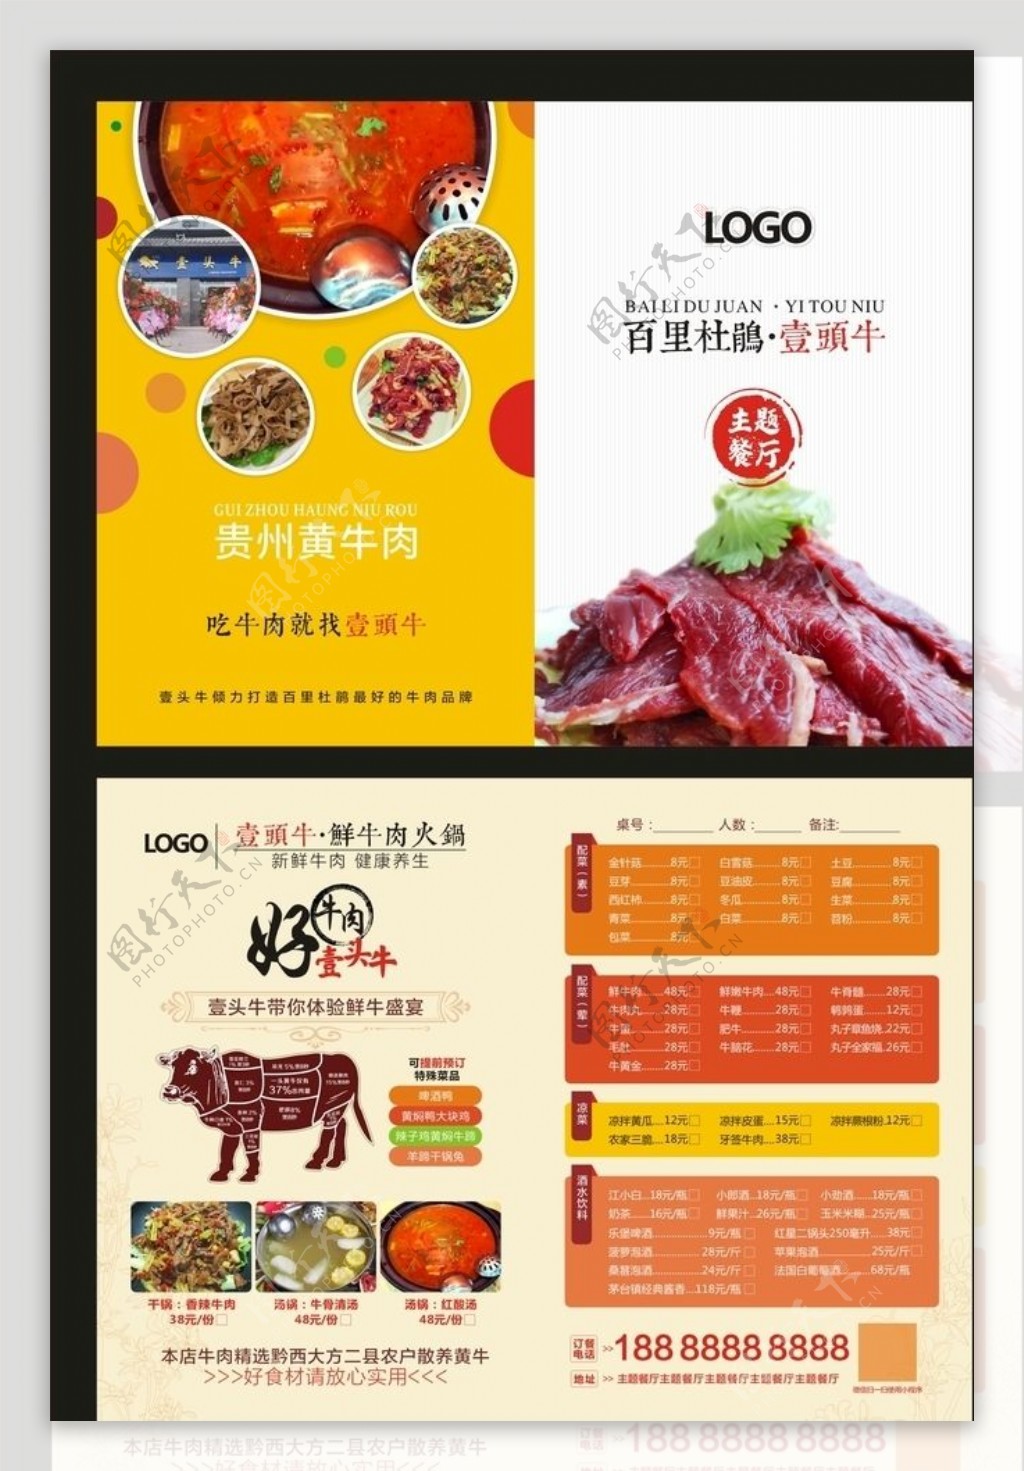 牛肉食品菜单矢量图片(图片ID:1042651)_-其他-生活百科-矢量素材_ 素材宝 scbao.com